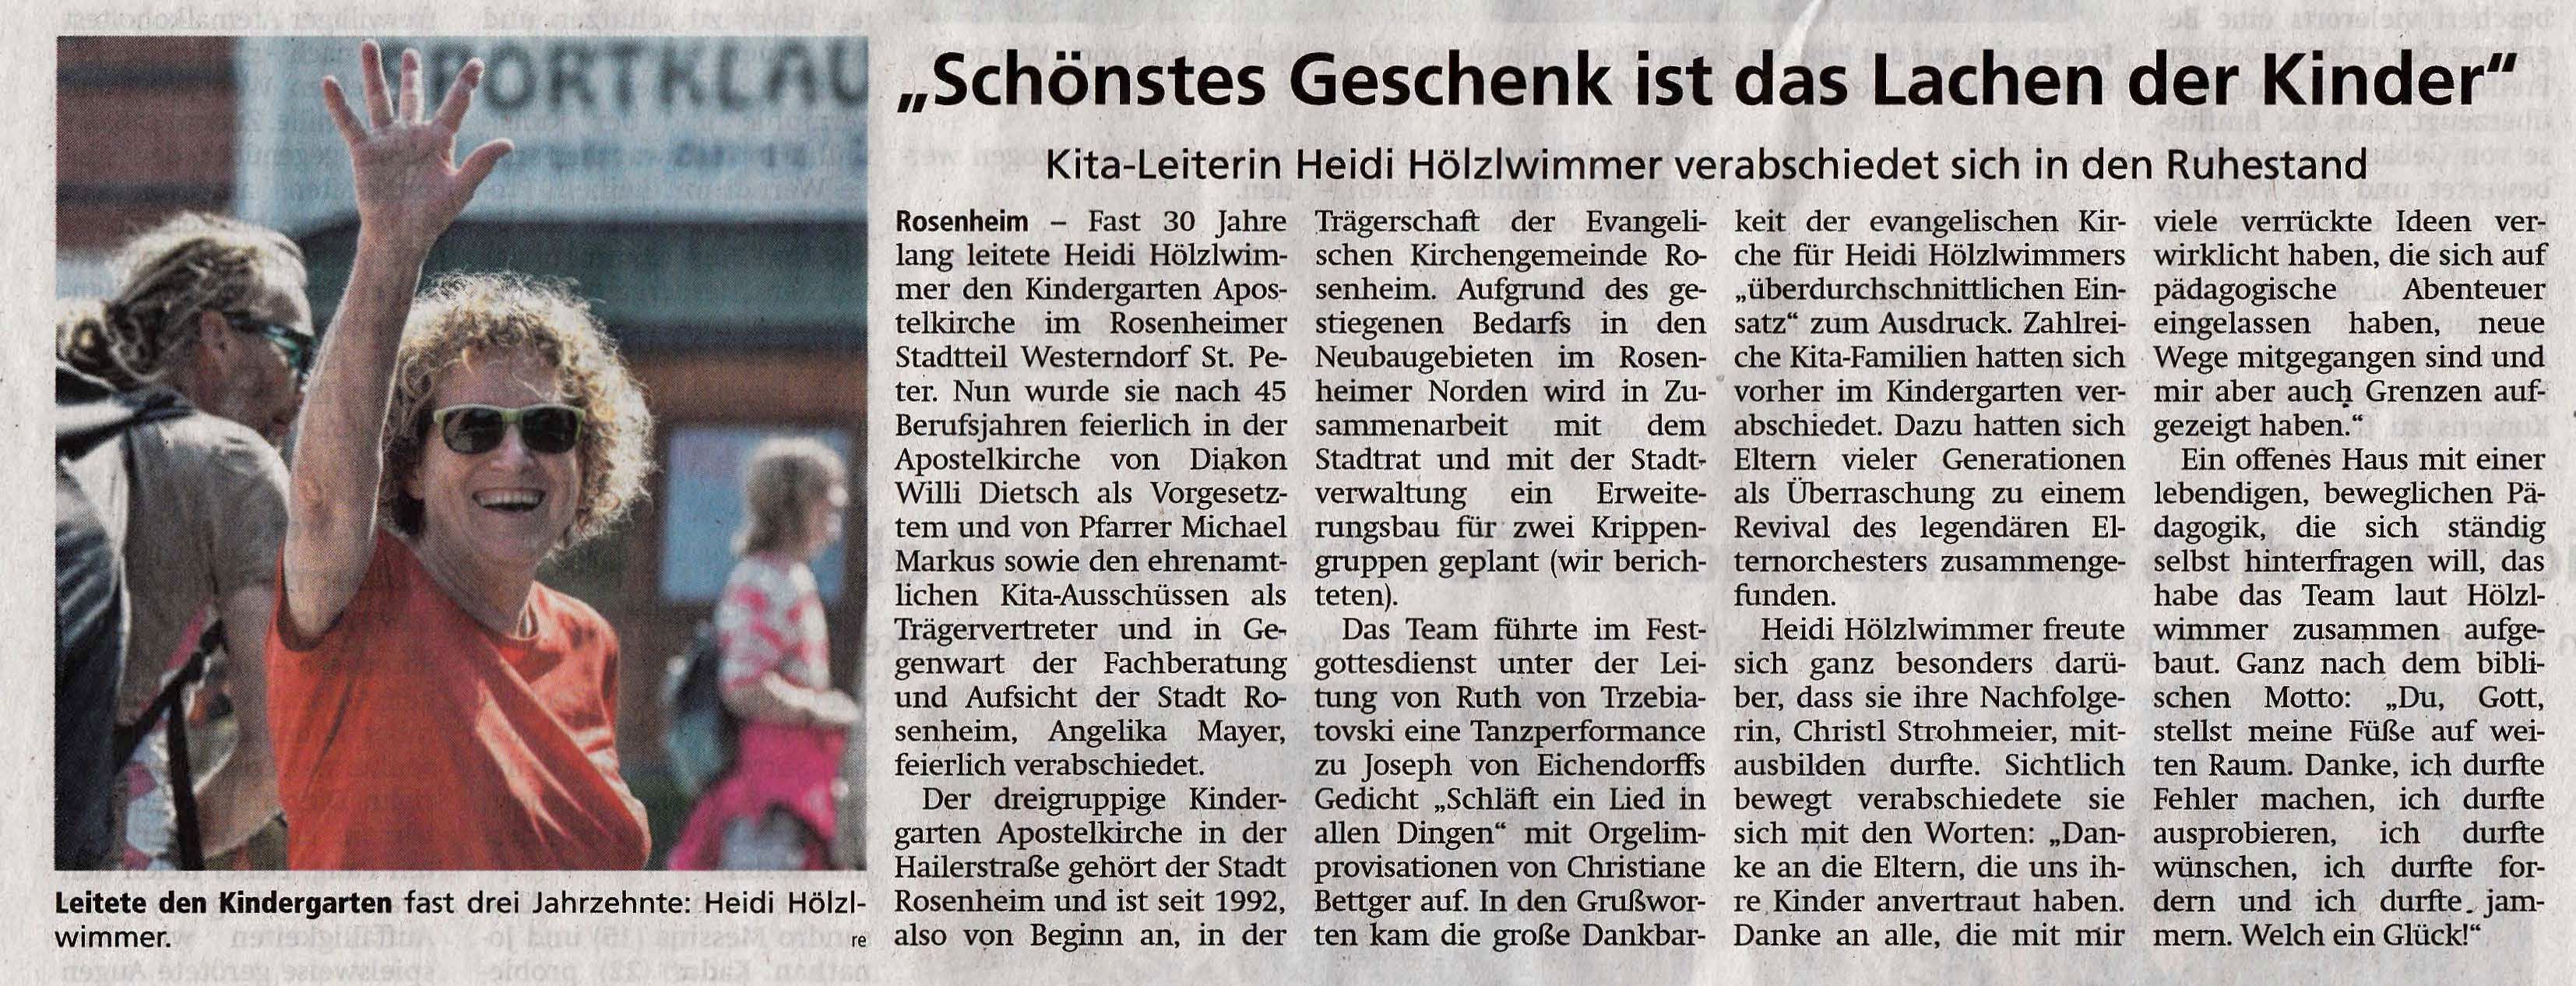 Pressetext zur Verabschiedung von Frau Hölzlwimmer